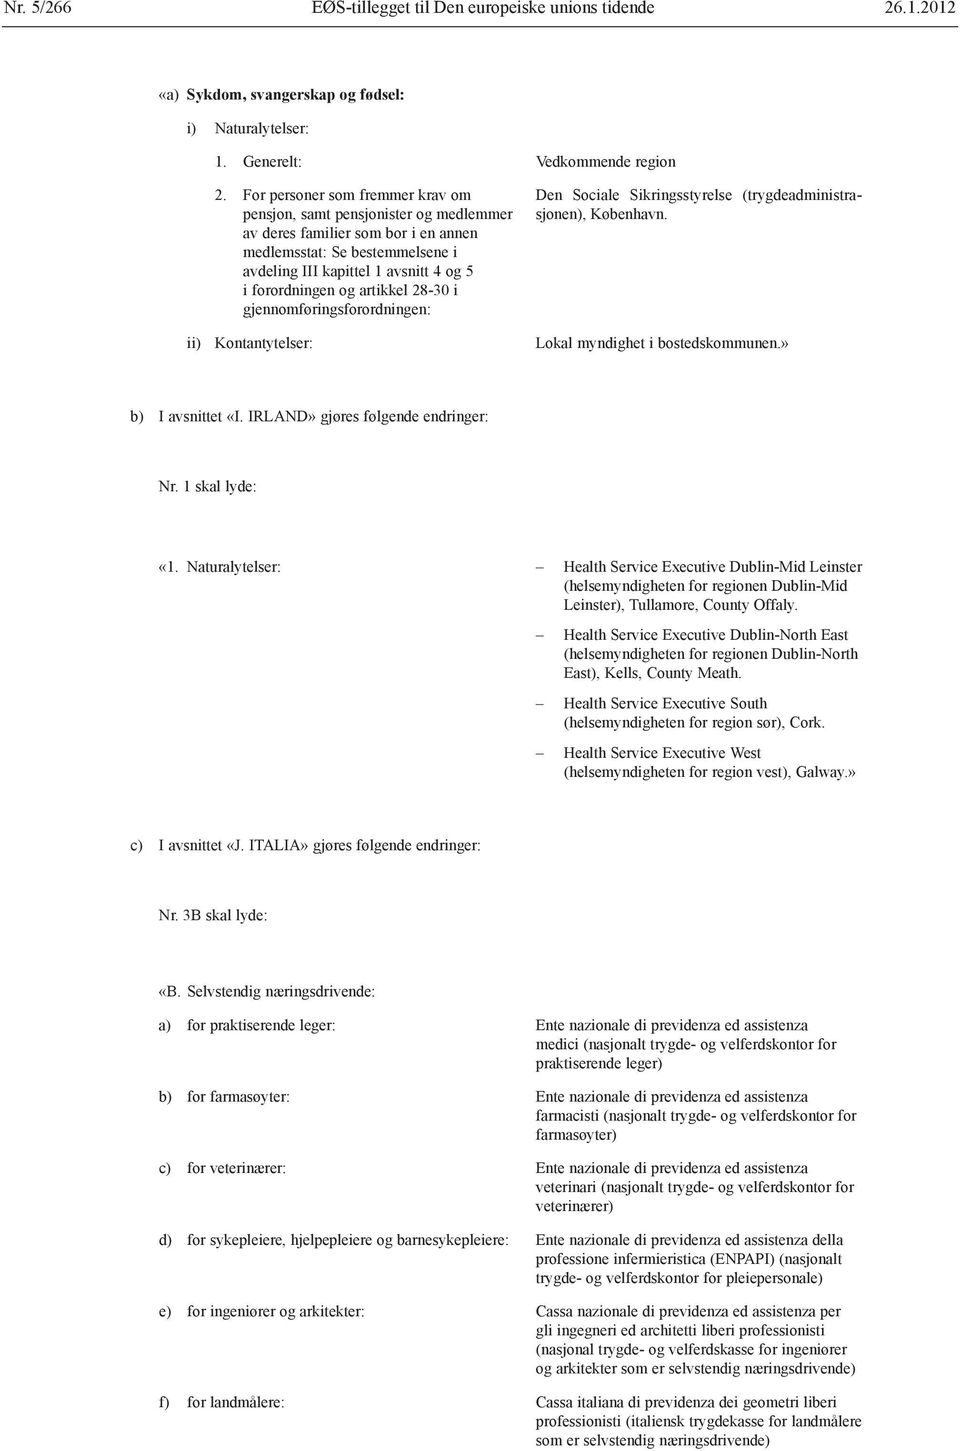 artikkel 28 30 i gjennomføringsforordningen: ii) Kontantytelser: Den Sociale Sikringsstyrelse (trygdeadministrasjonen), København. Lokal myndighet i bostedskommunen.» b) I avsnittet «I.